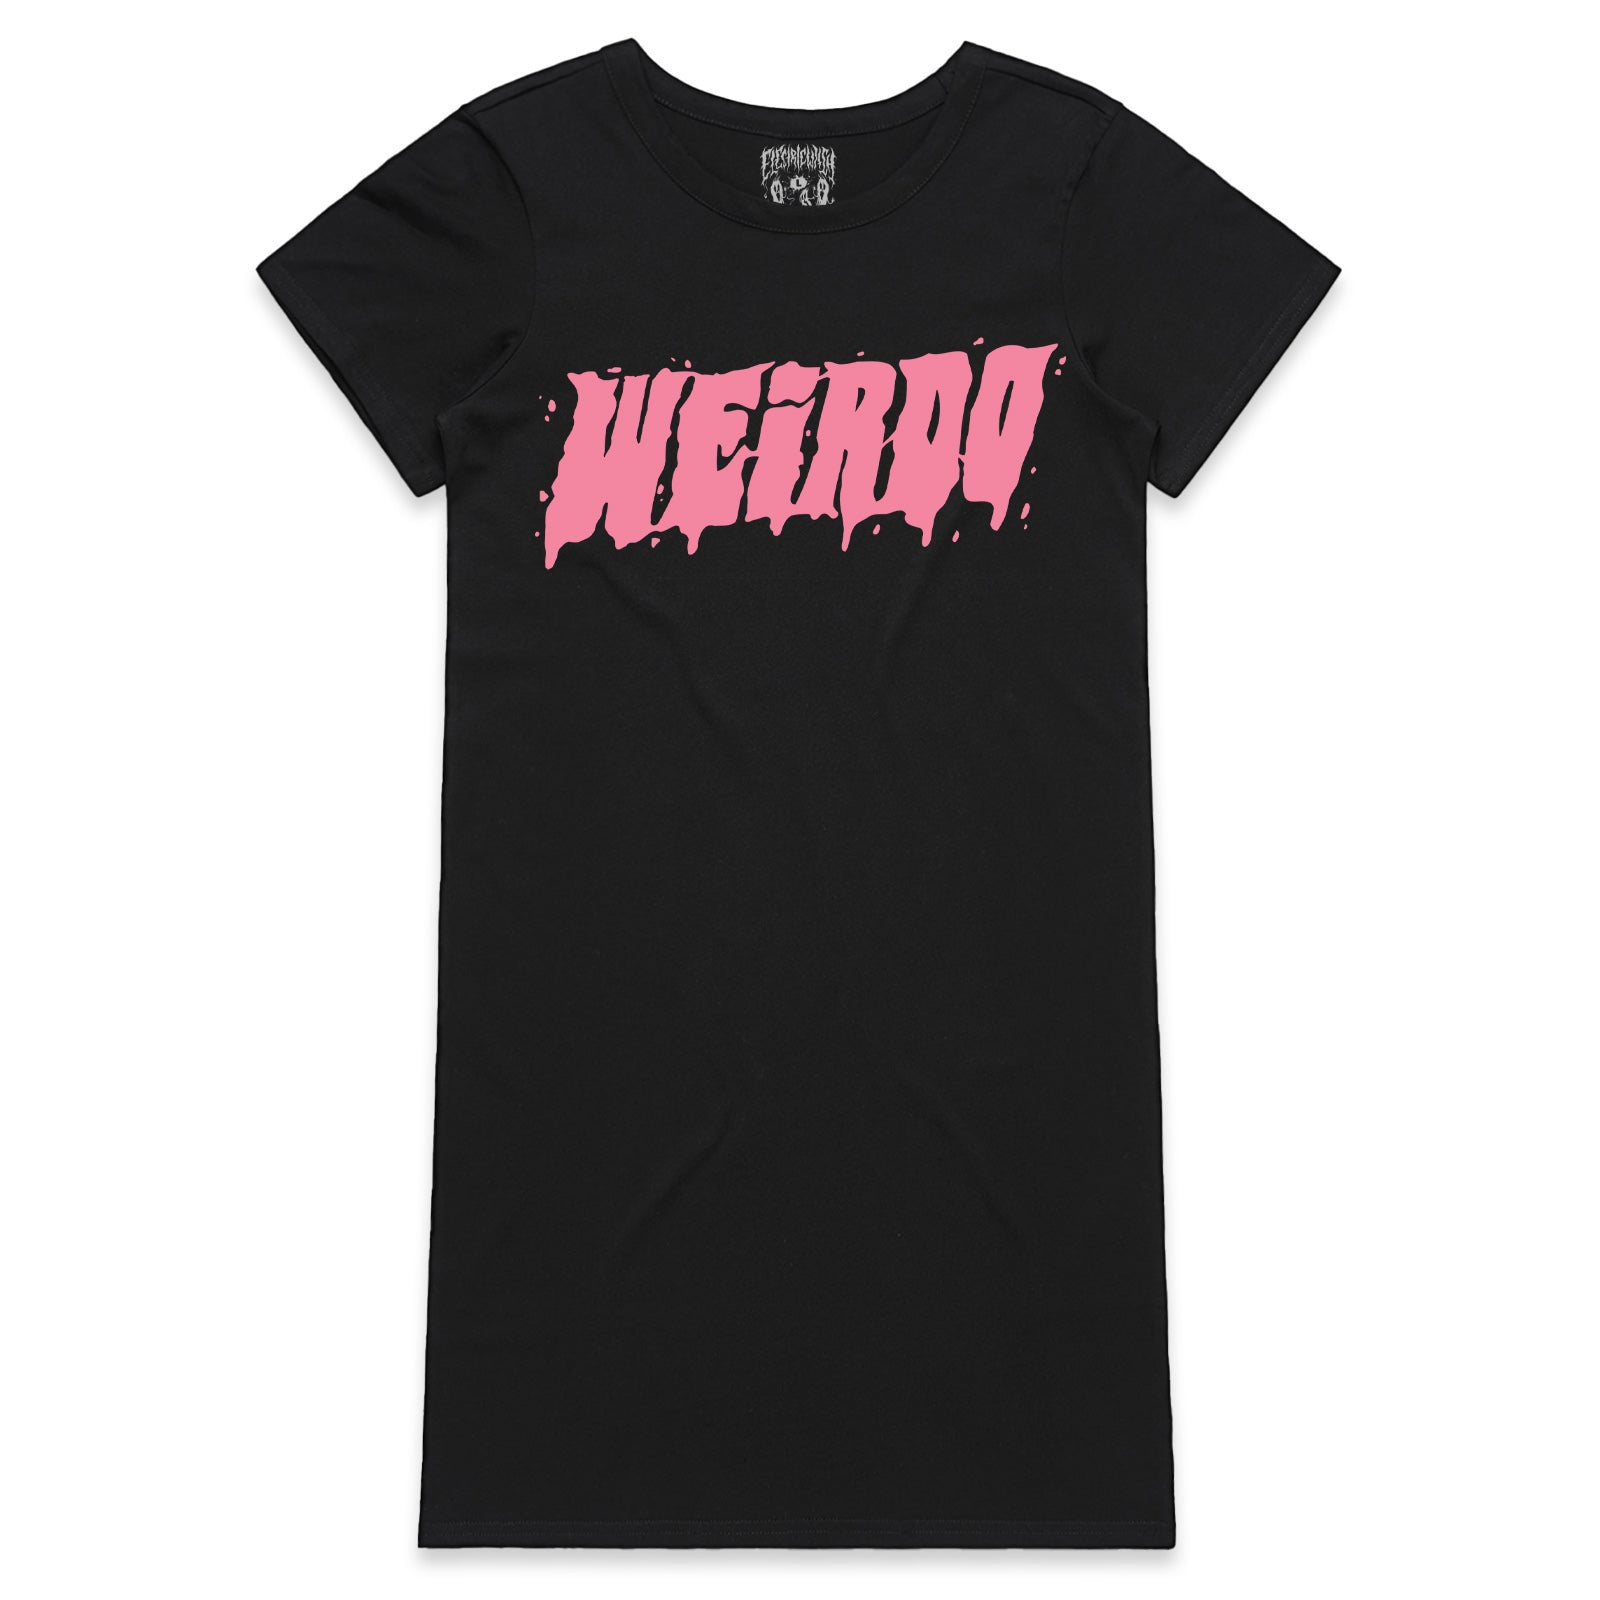 Weirdo T-Shirt Dress (Pink)